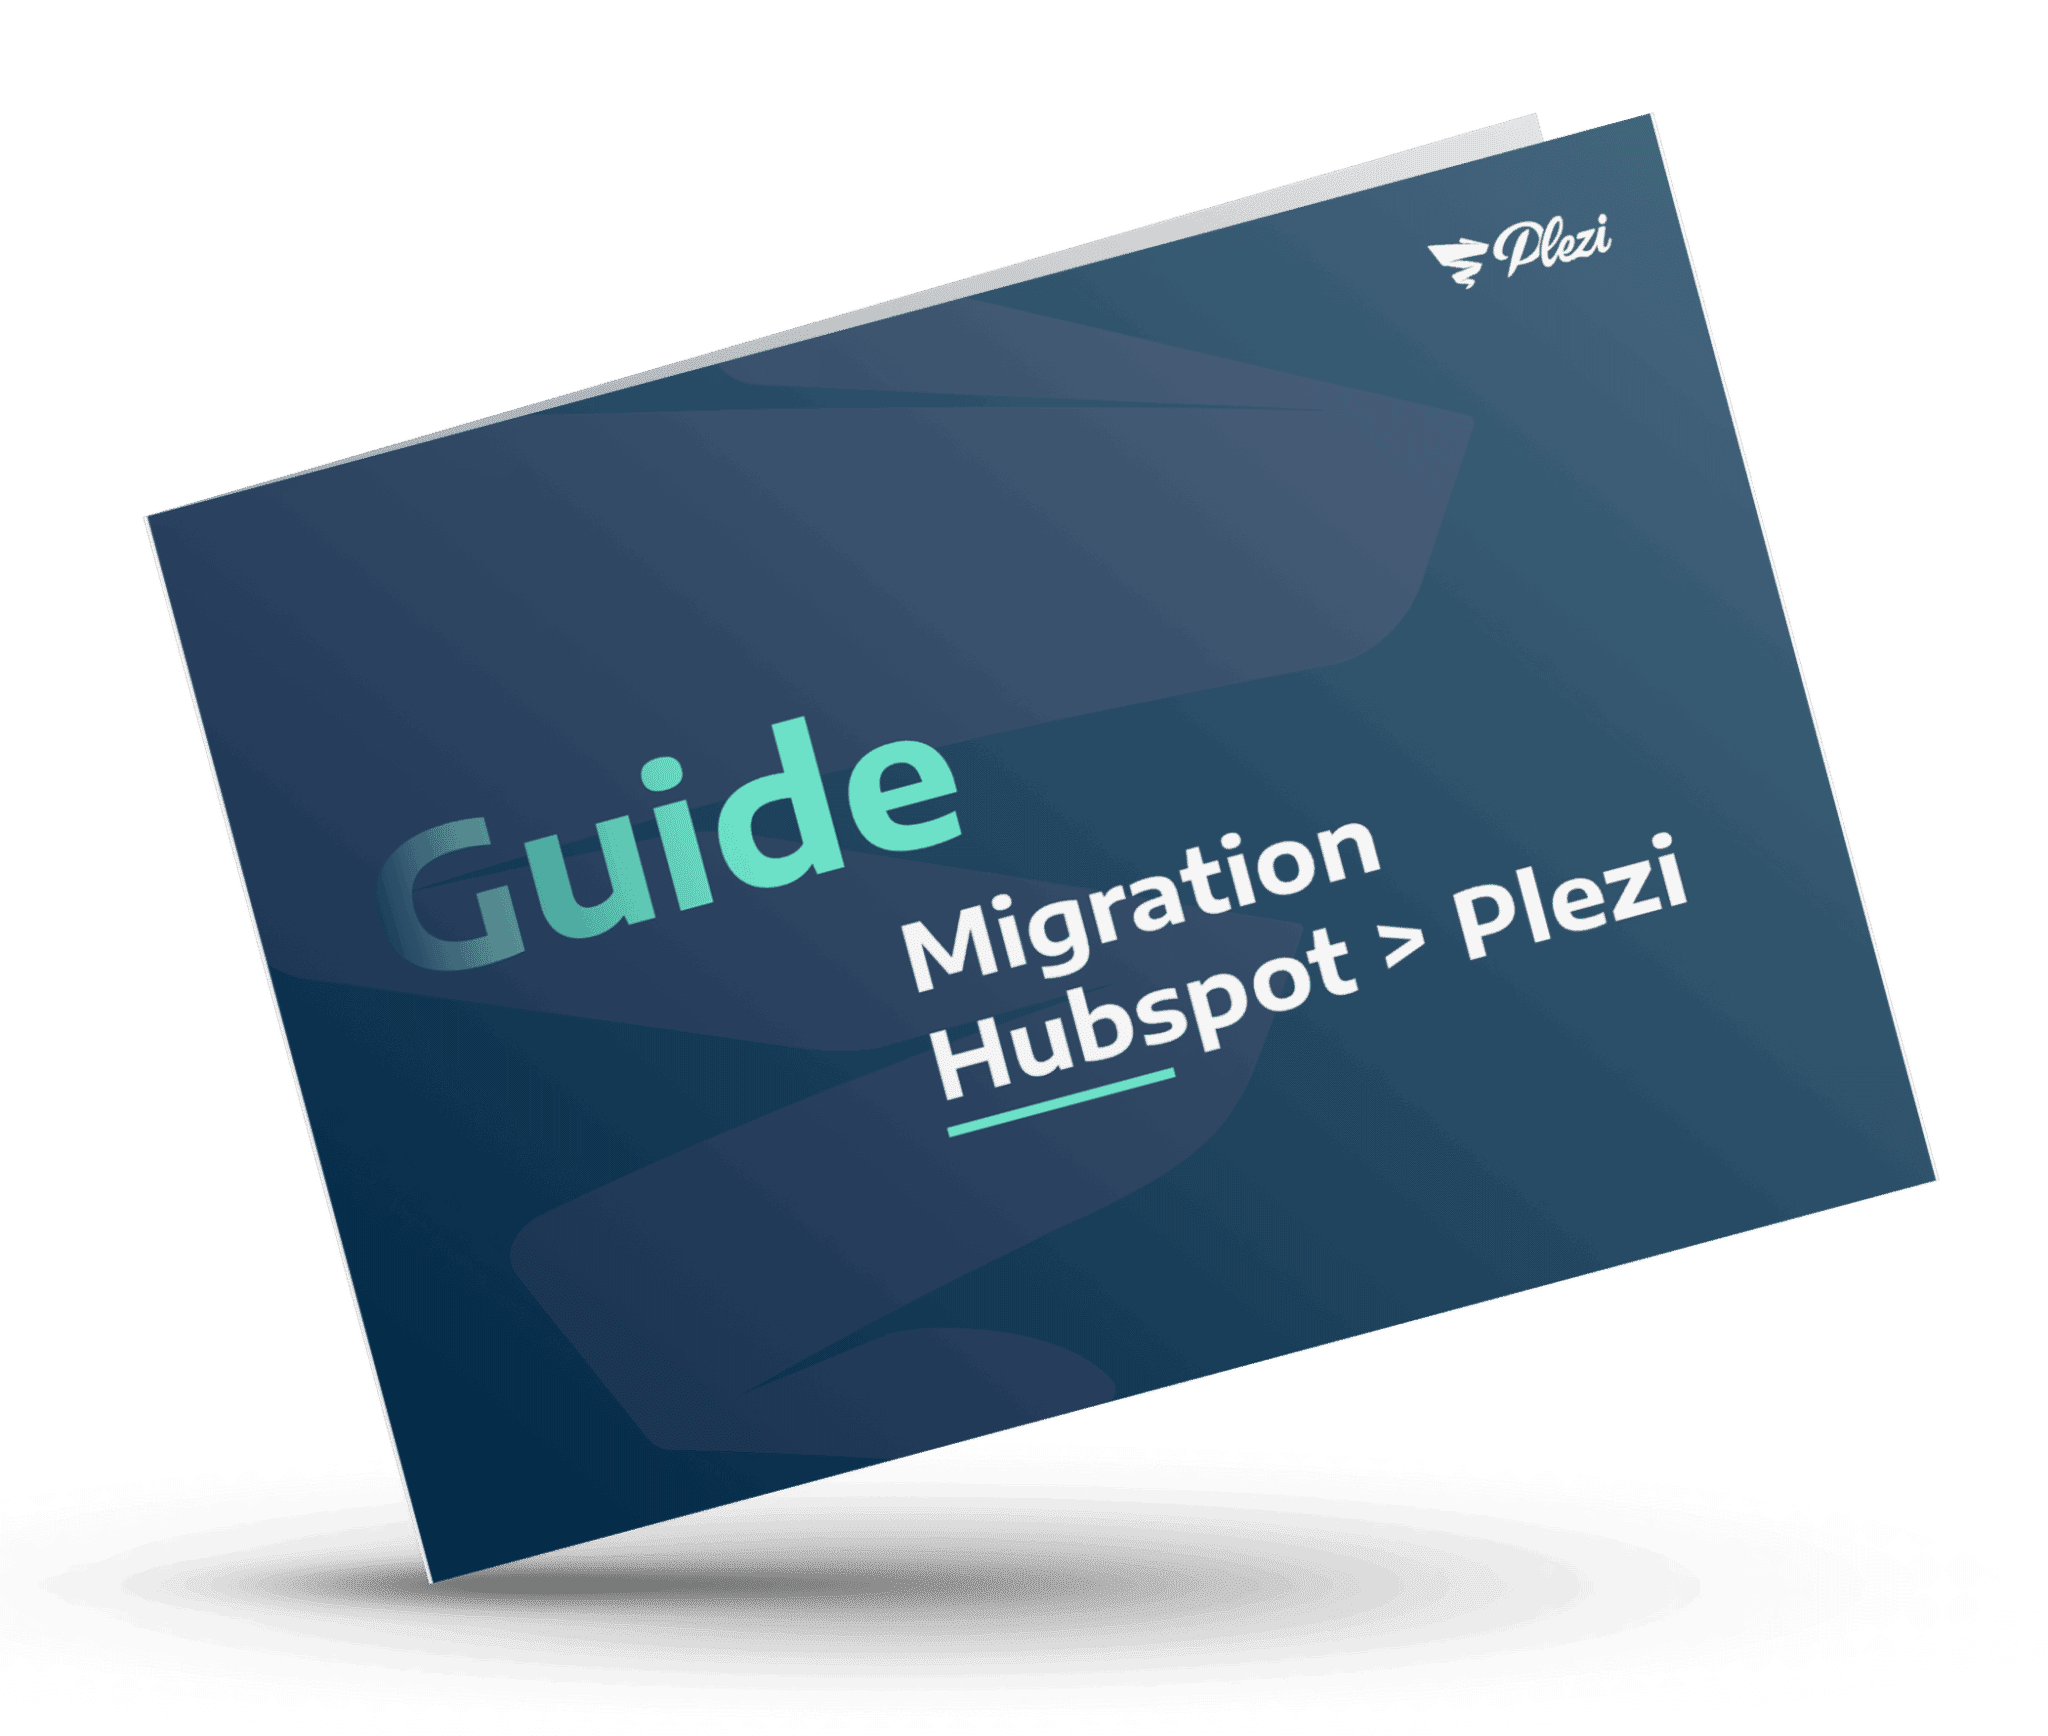 mockup du guide de la migration de hubspot Ã  plezi